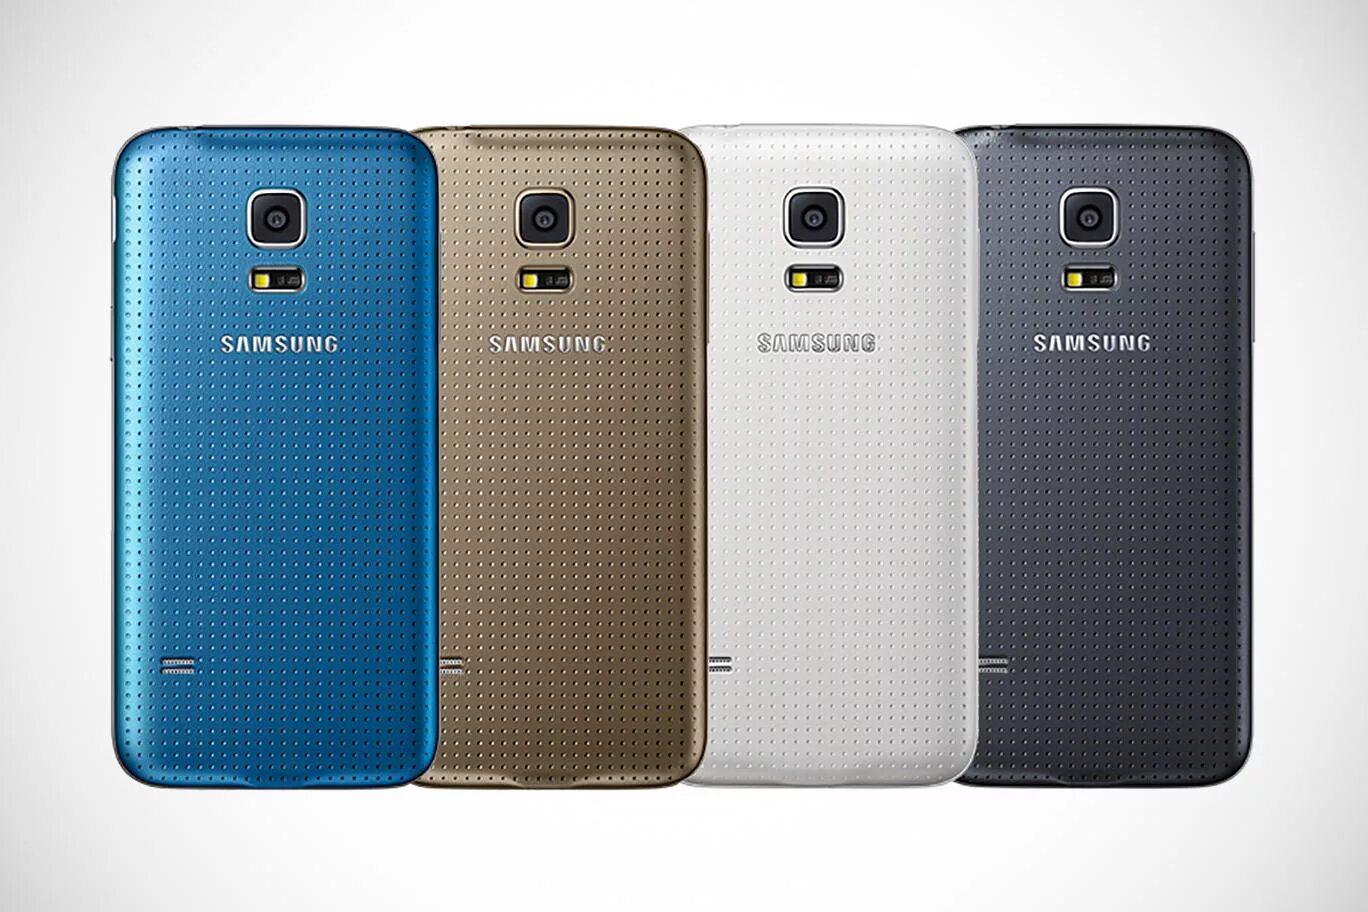 Самсунг галакси s5 Mini. Samsung Galaxy s5. Samsung Galaxy s5 Mini Duos. Samsung s5 Mini Duos.